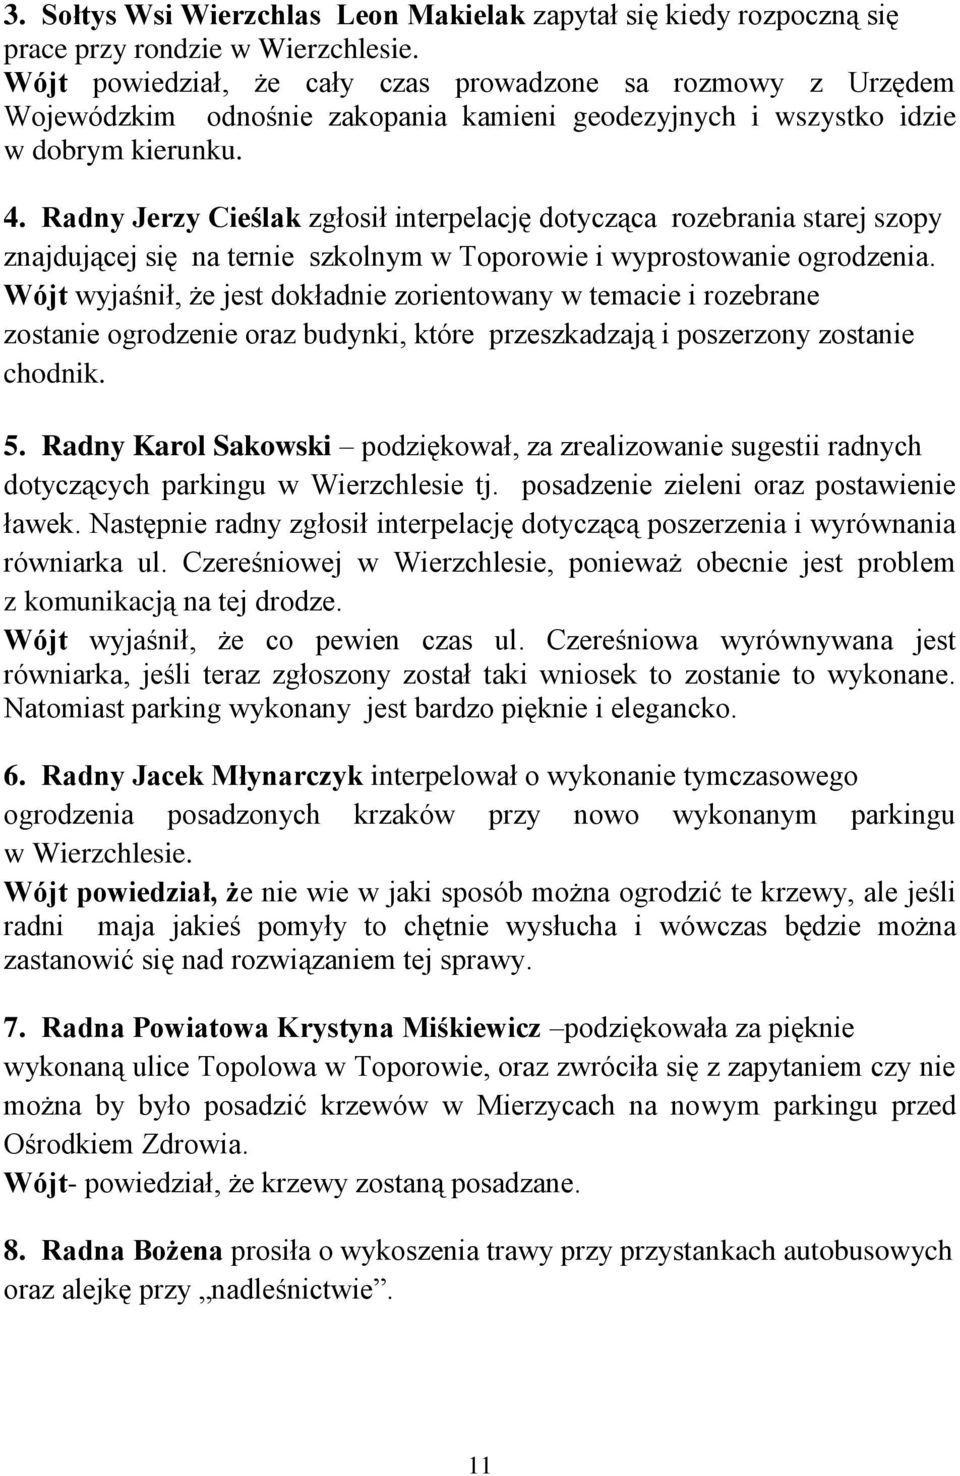 Radny Jerzy Cieślak zgłosił interpelację dotycząca rozebrania starej szopy znajdującej się na ternie szkolnym w Toporowie i wyprostowanie ogrodzenia.